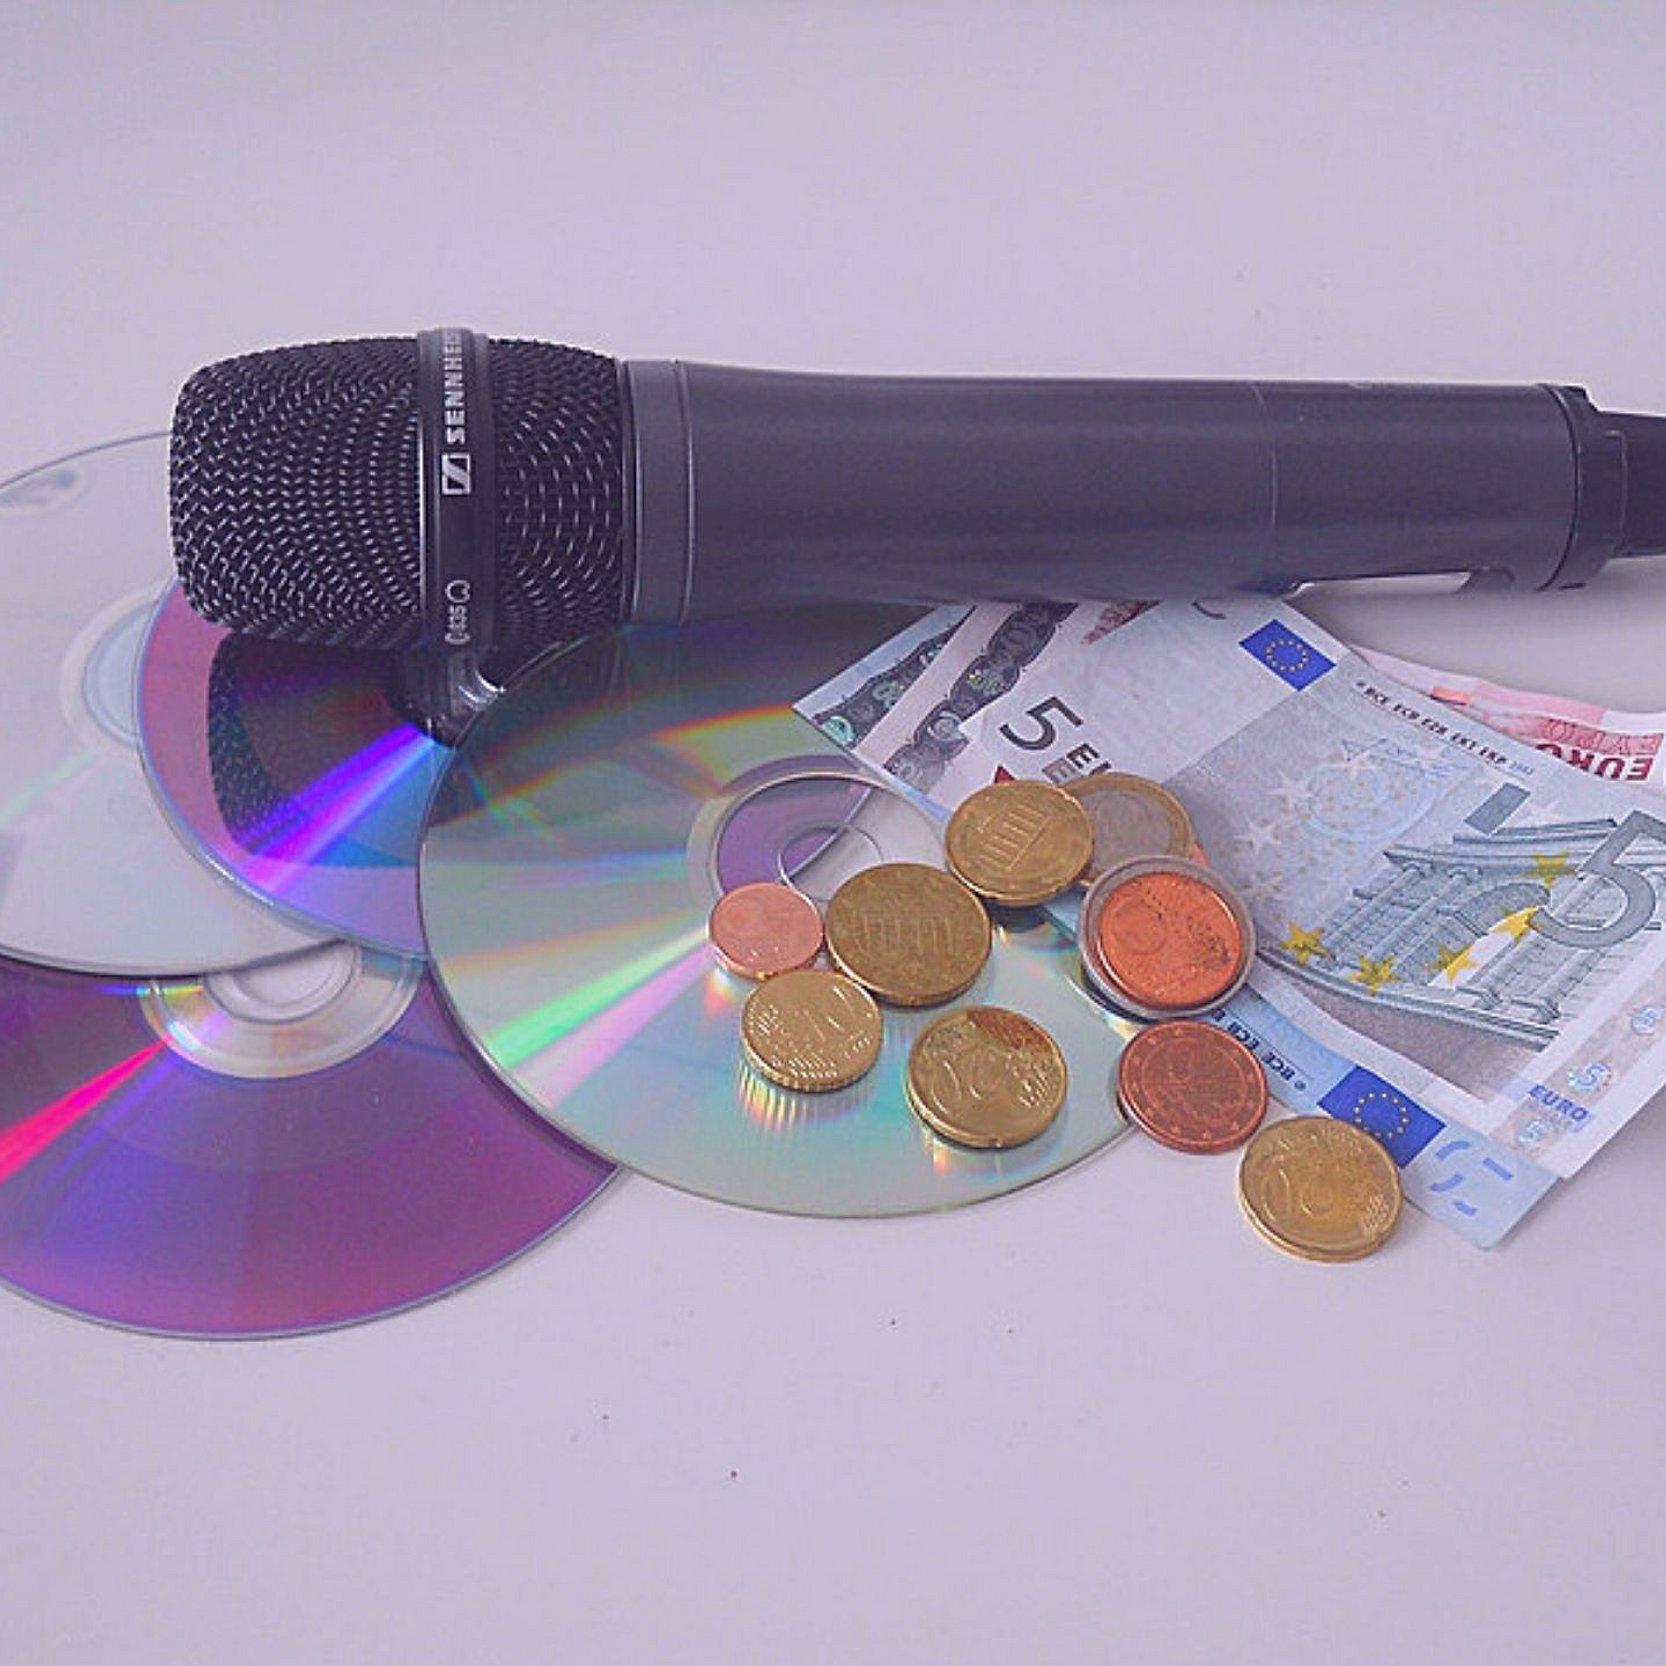 3 CDs, 1 Mikro und Bargeld liegen auf einem Tisch